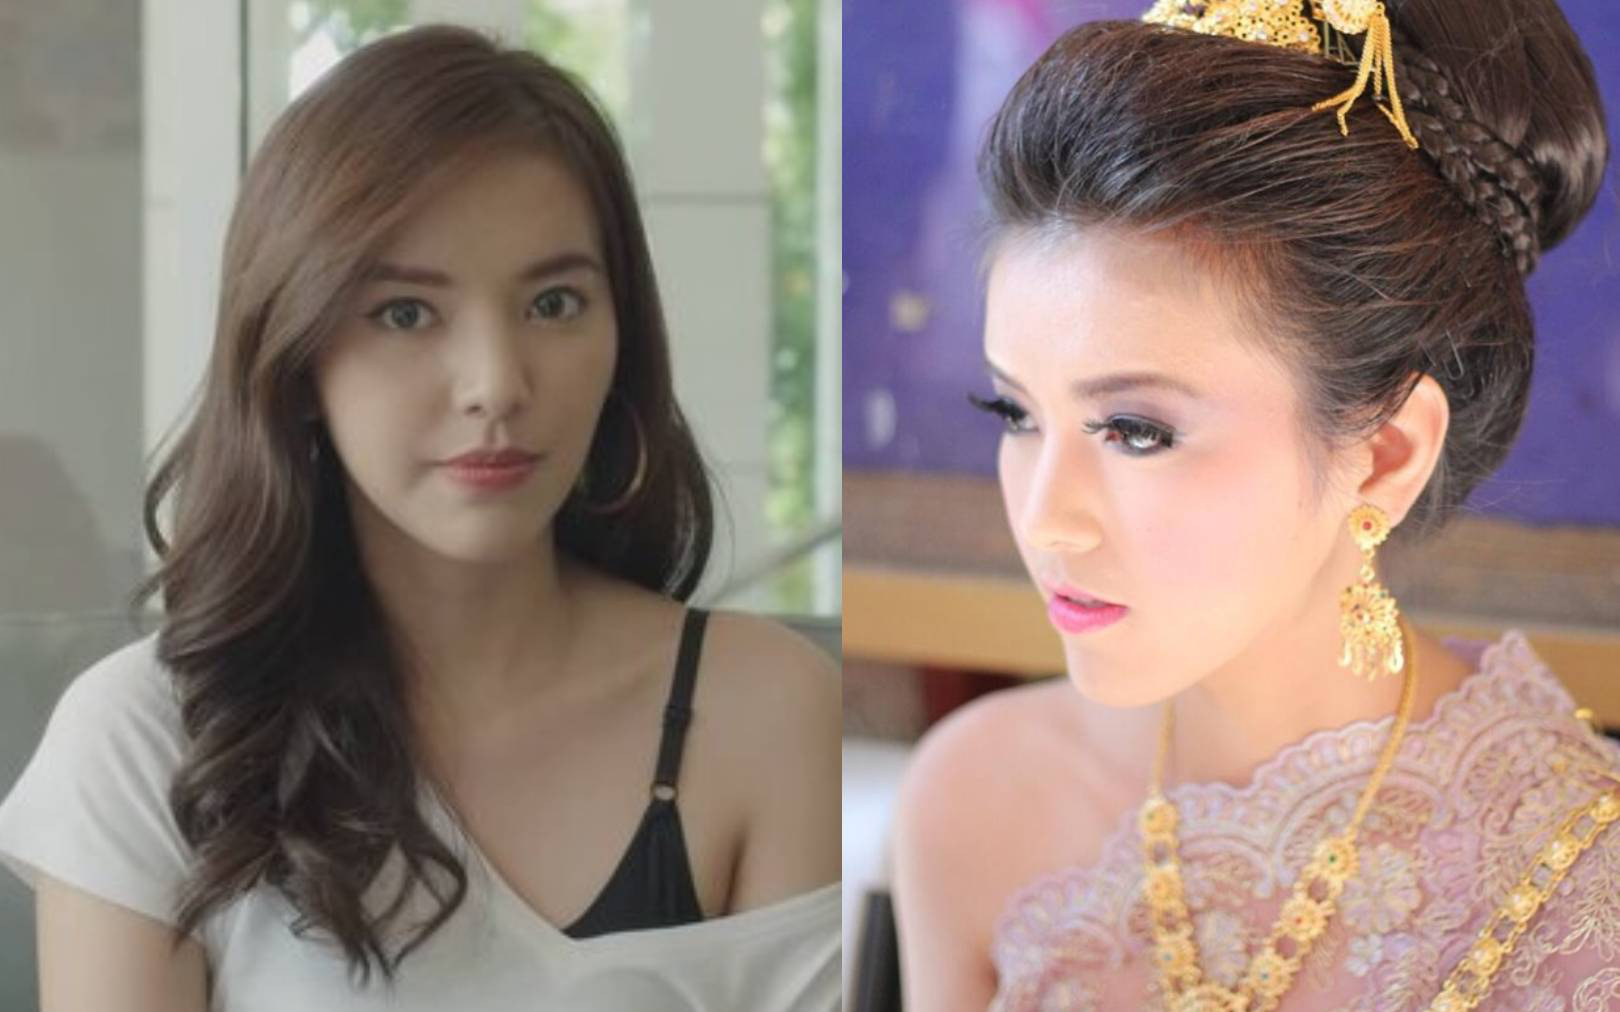 Trúc Anh - Học trò của Minh Tú ở The Face đóng phim gây sốt Thái Lan khiến ai cũng bất ngờ